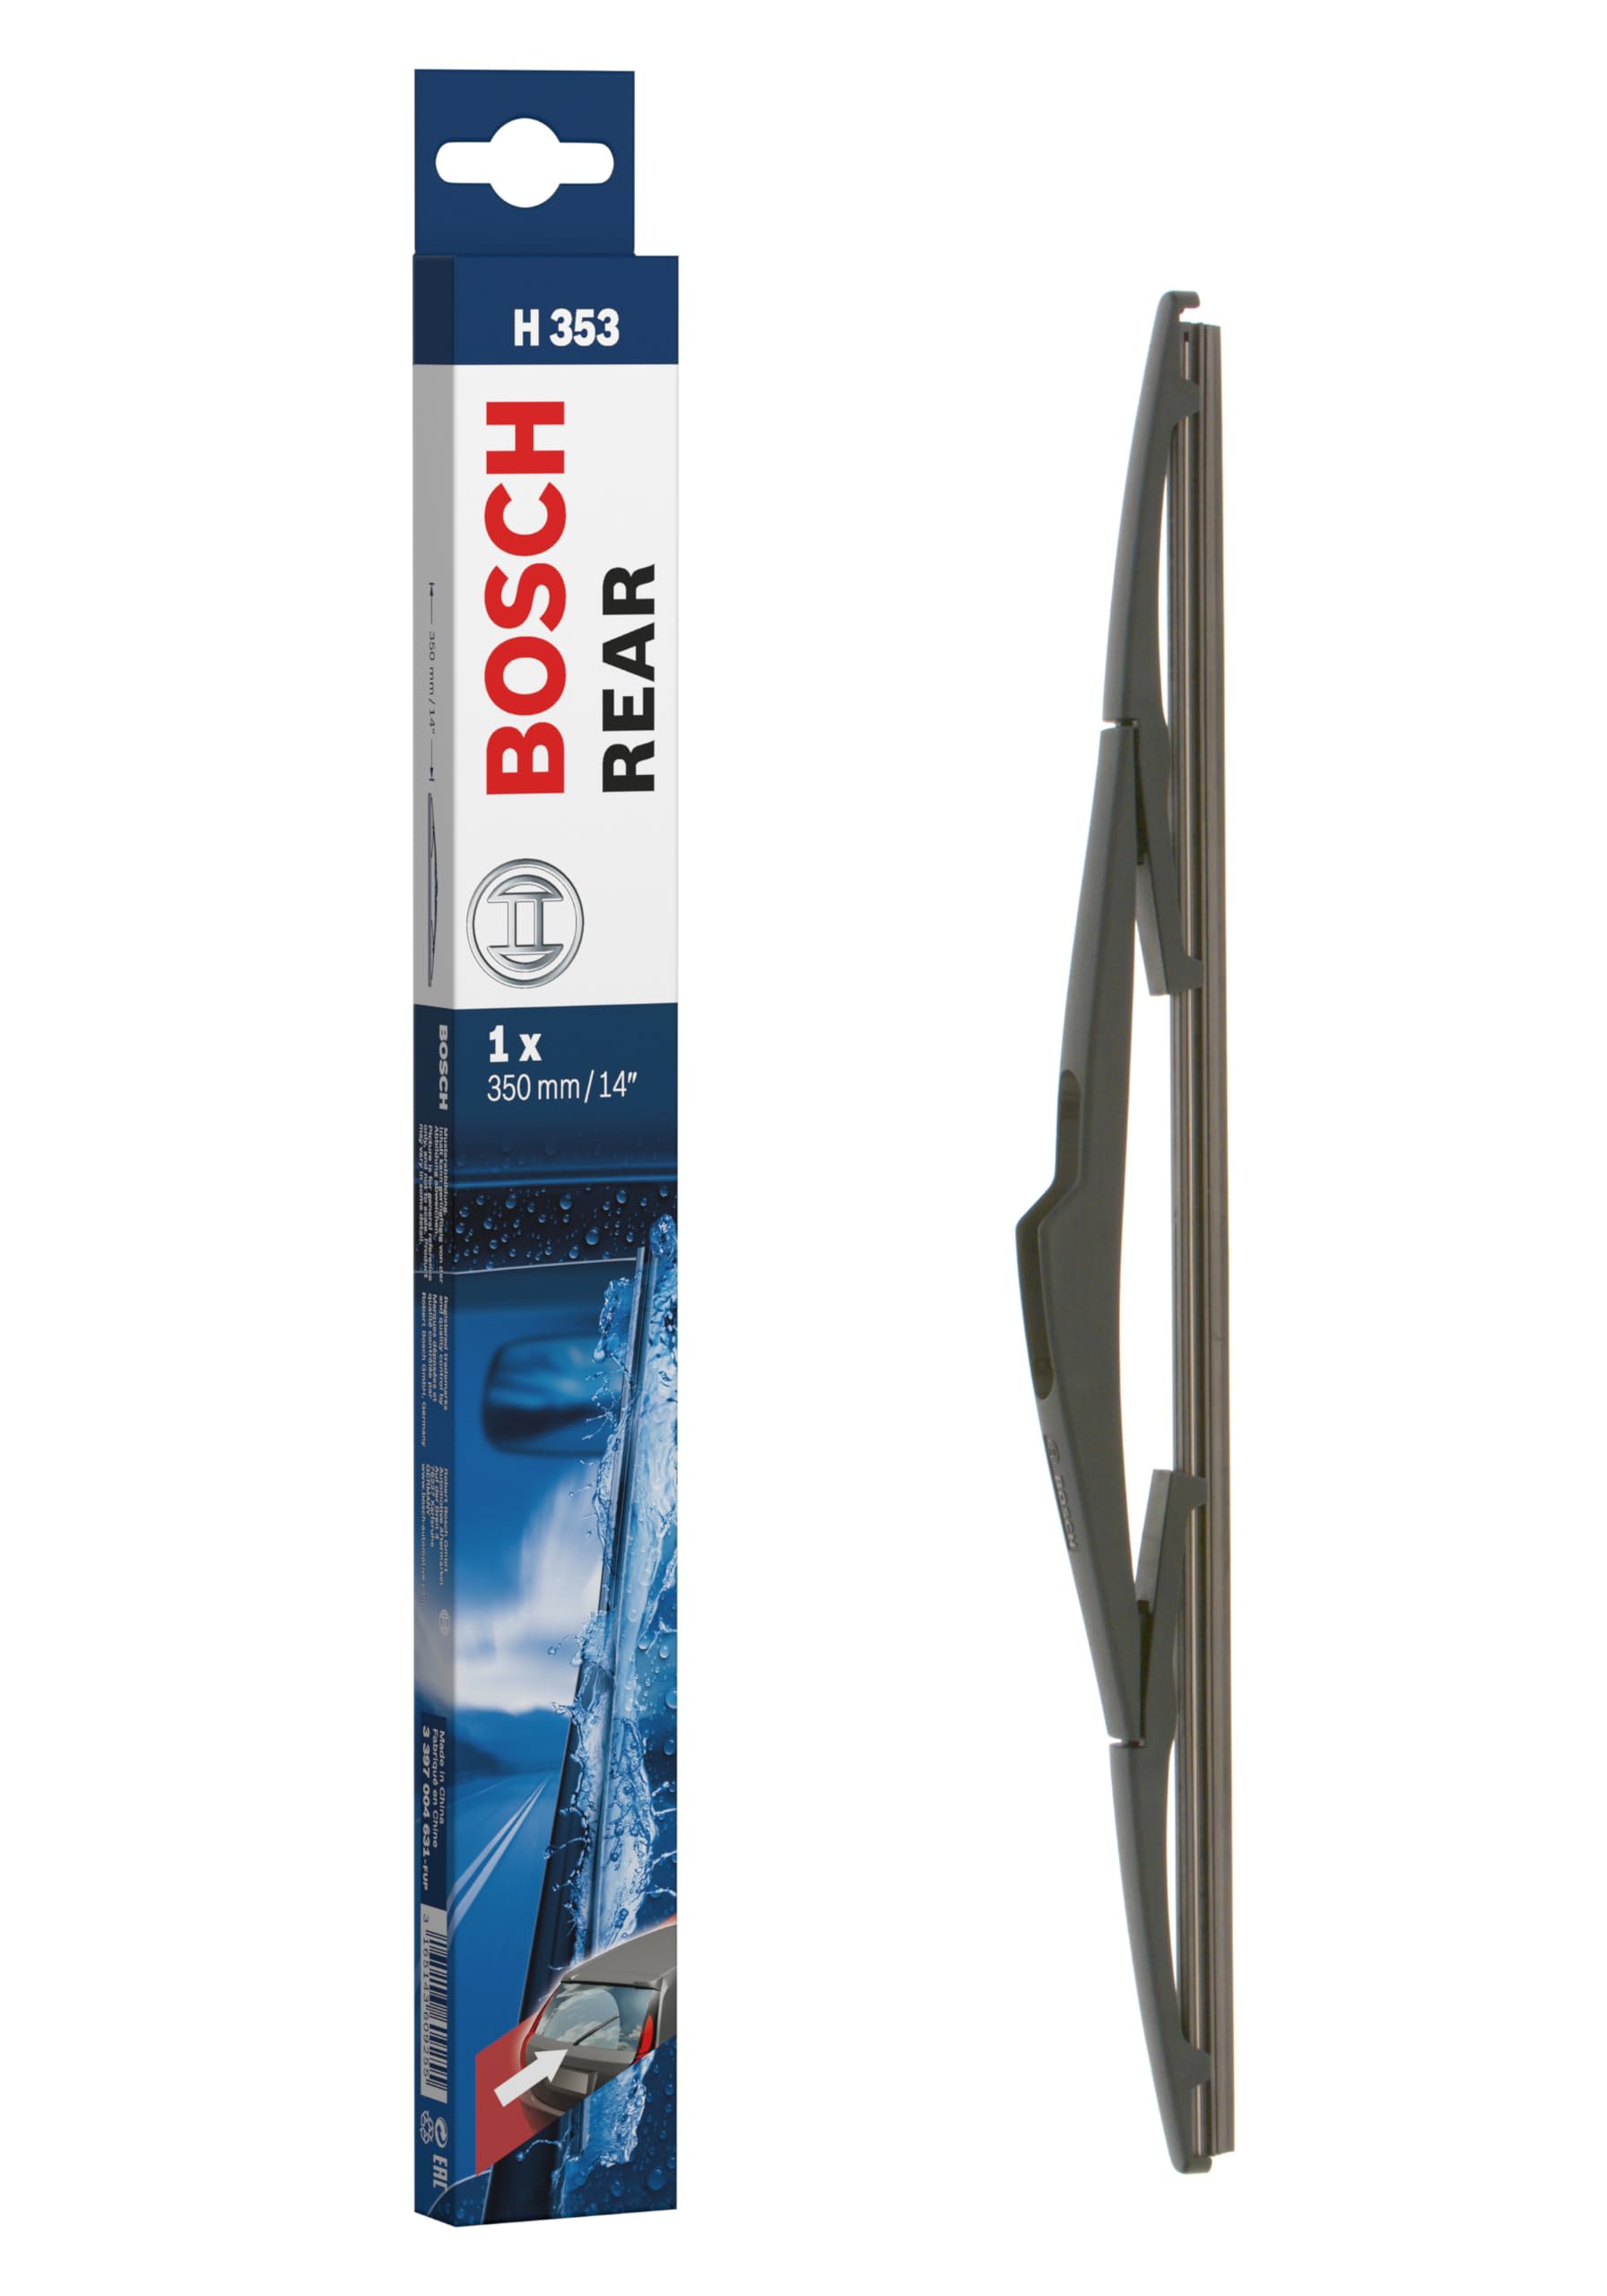 Bosch Scheibenwischer Rear H353, Länge: 350mm – Scheibenwischer für Heckscheibe von Bosch Automotive